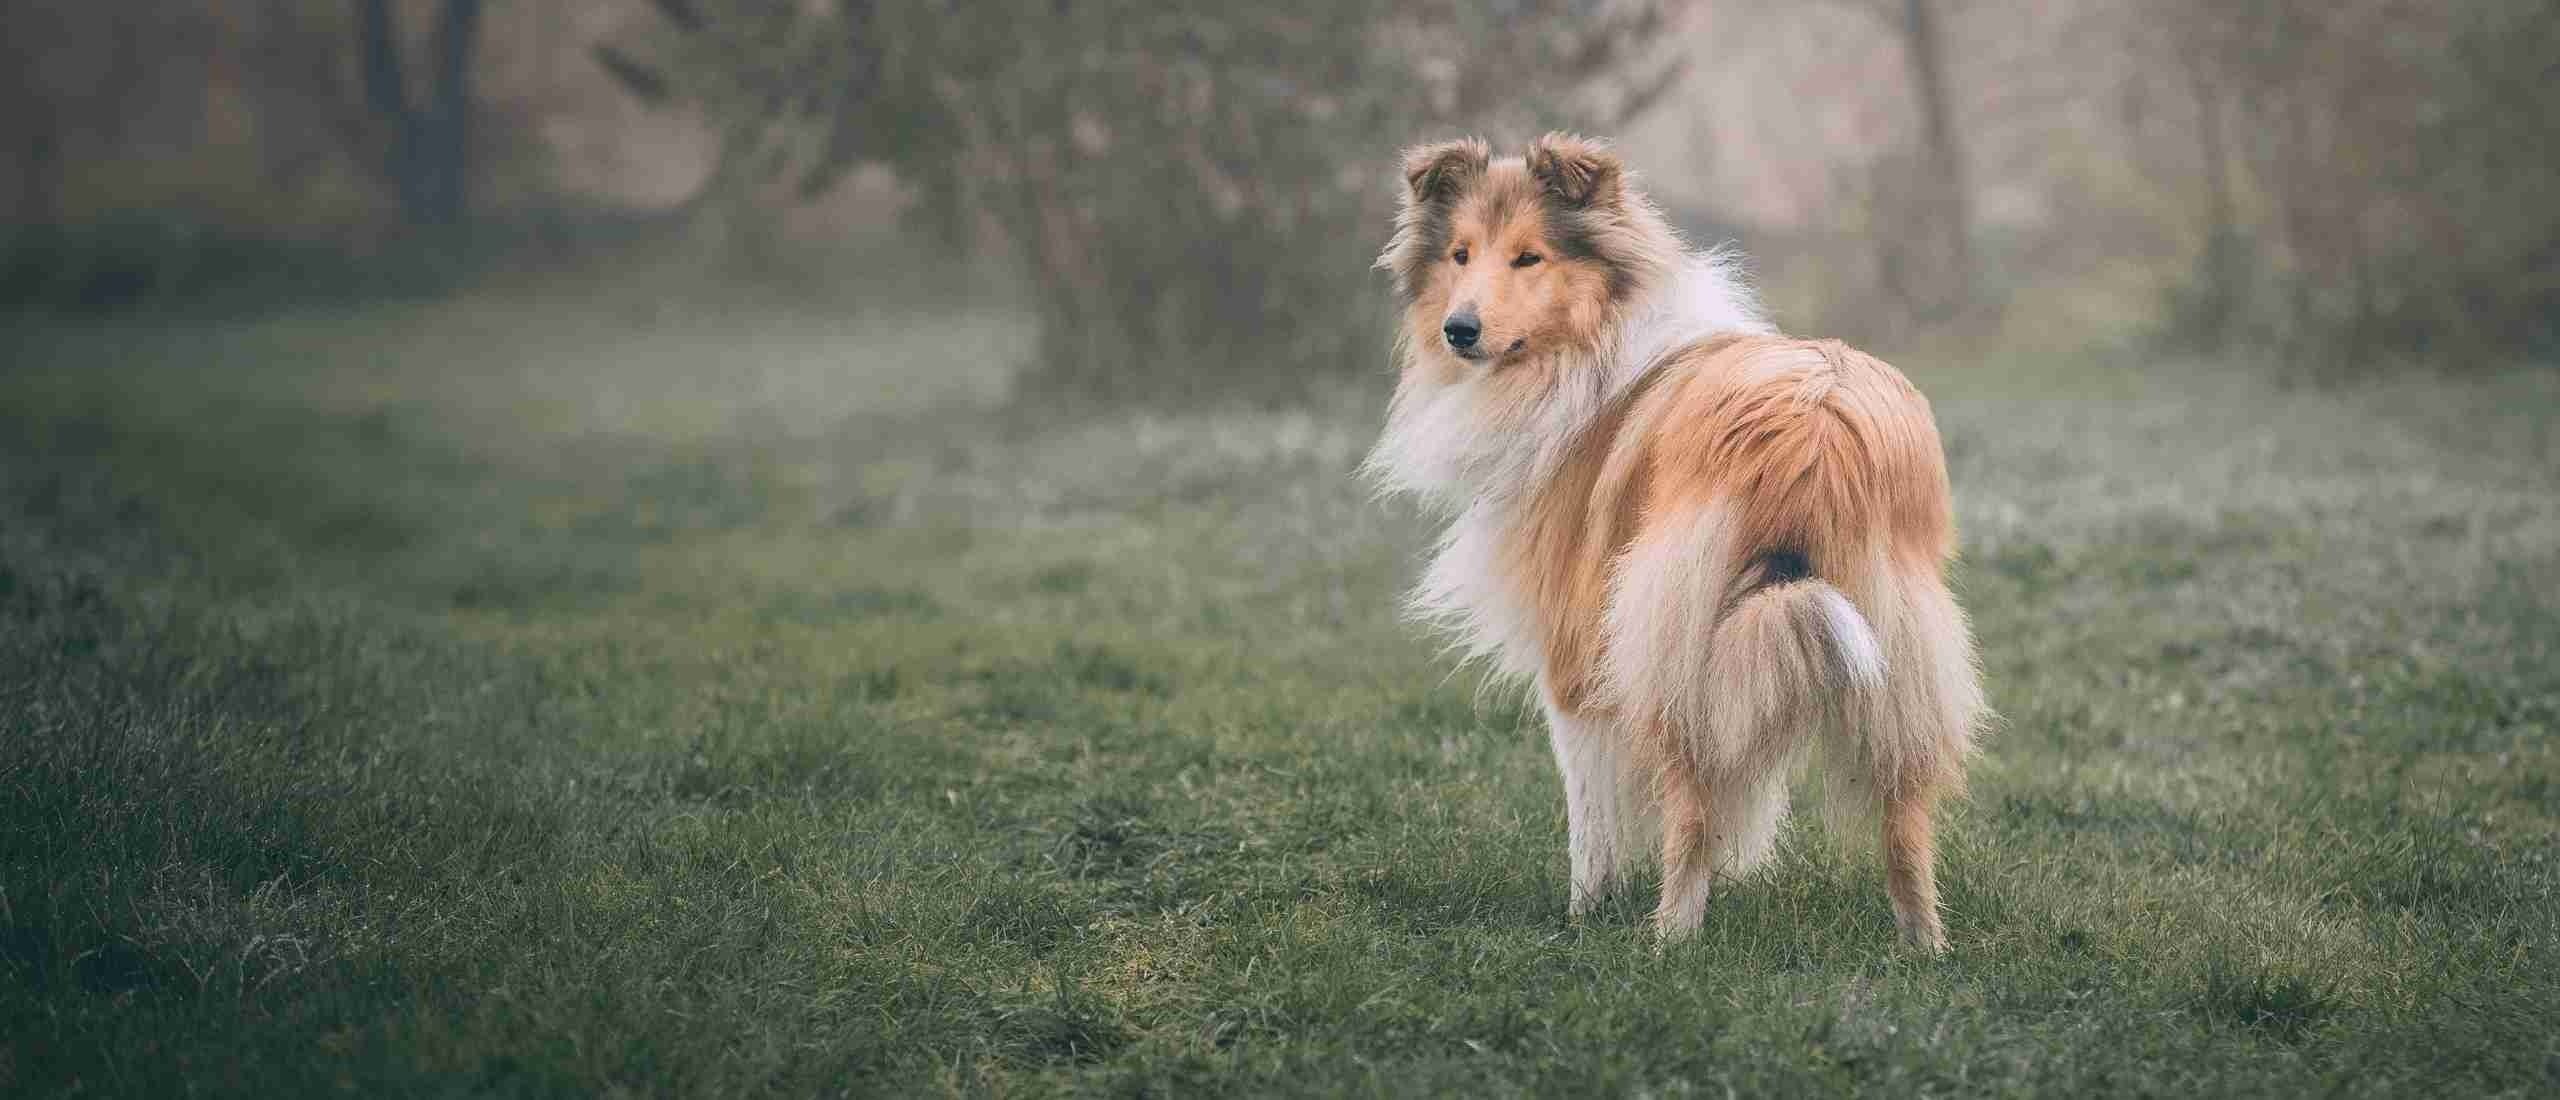 Urn voor honden: Een liefdevolle manier om afscheid te nemen van je trouwe viervoeter